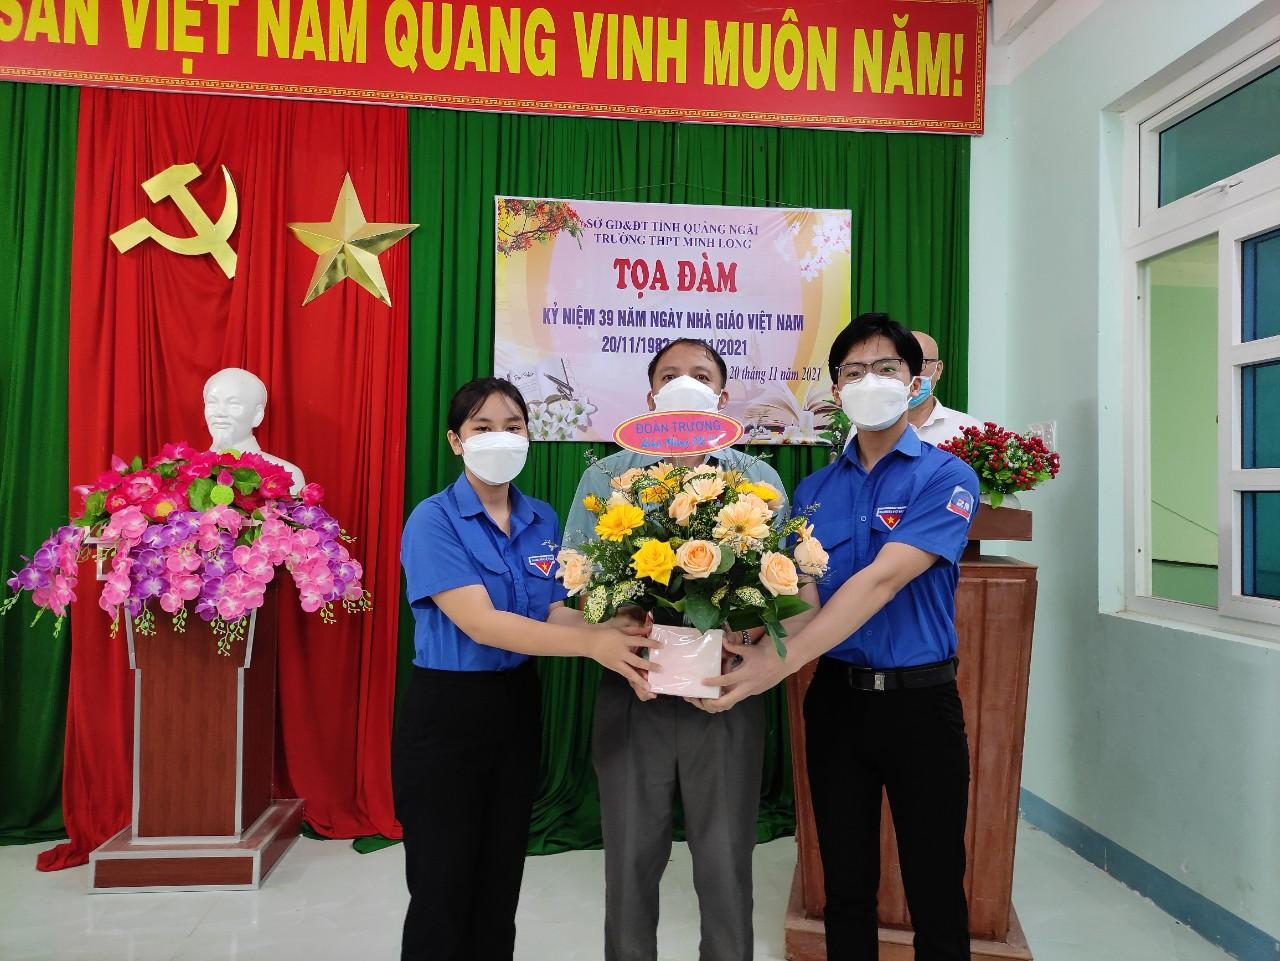 Đánh Giá Trường THPT Minh Long - Quảng Ngãi Có Tốt Không